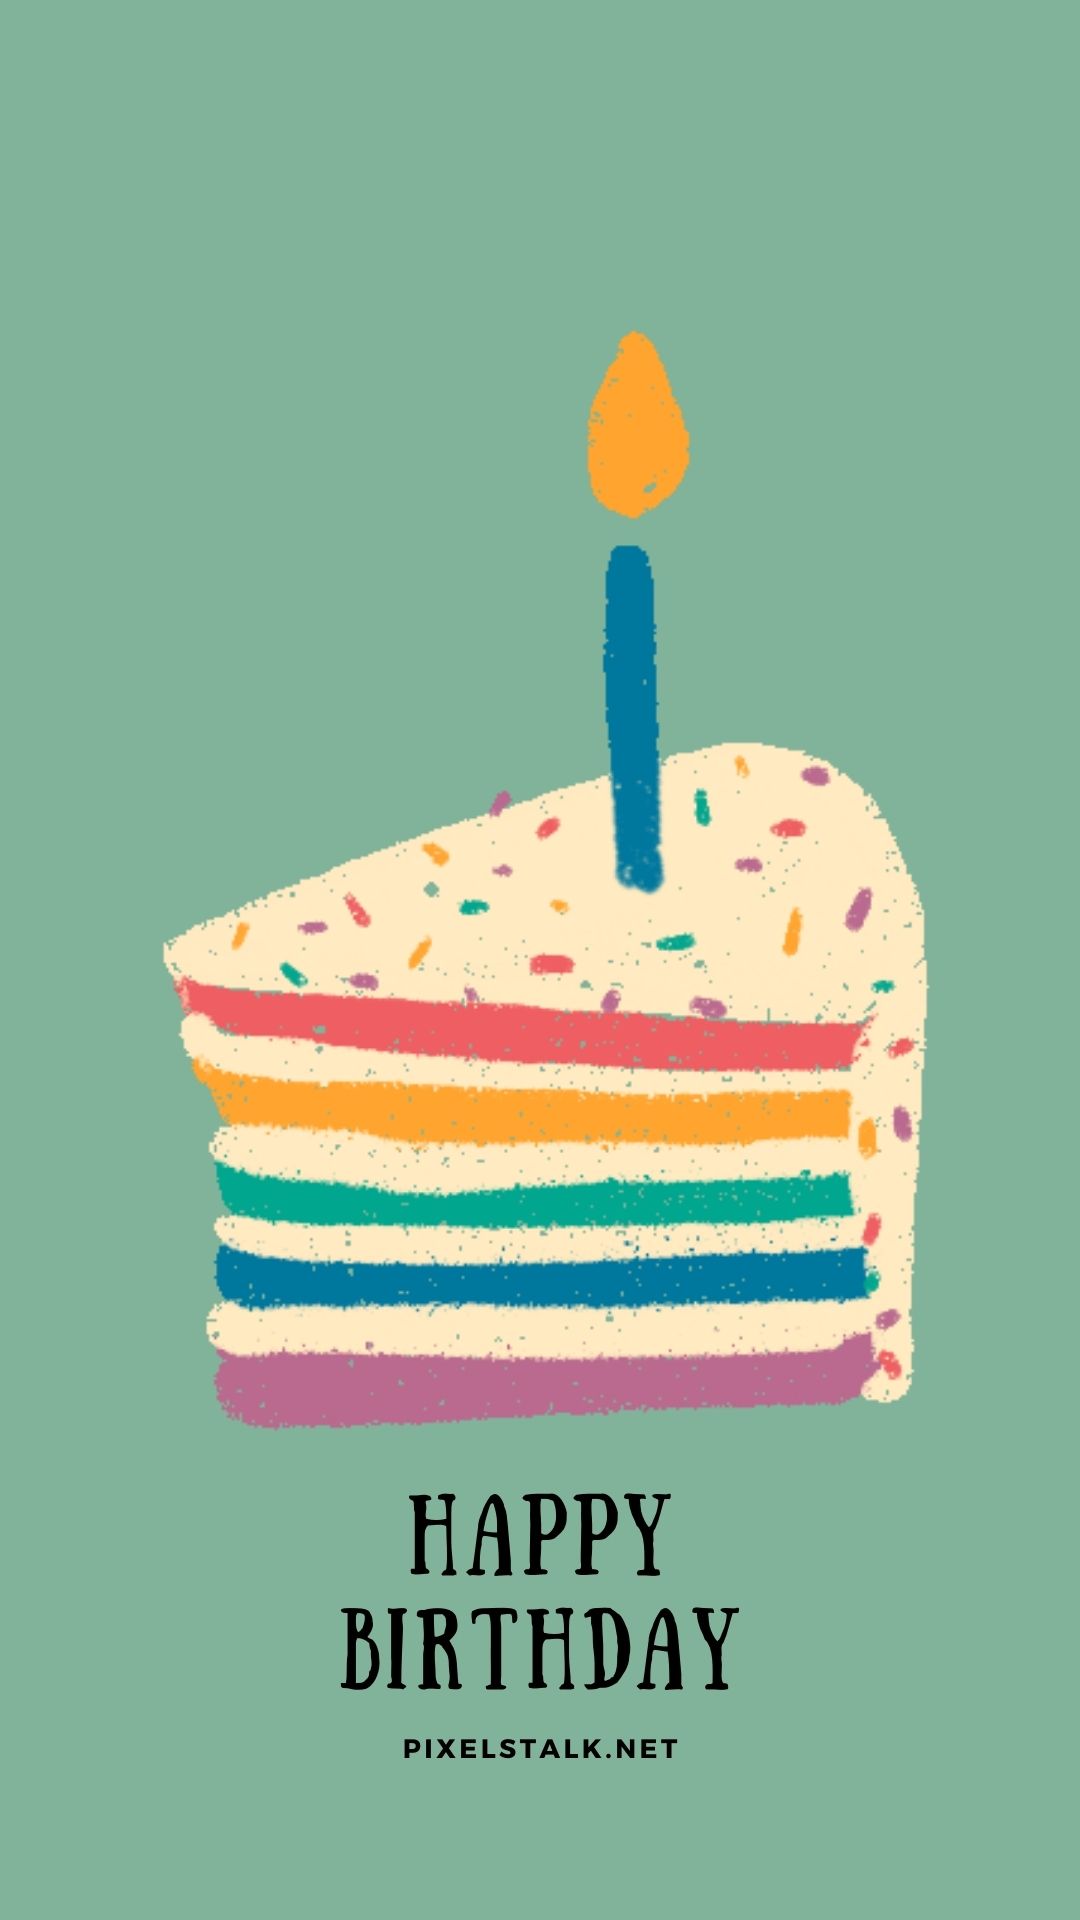 Happy Birthday Wallpapers Iphone Pixelstalk Net